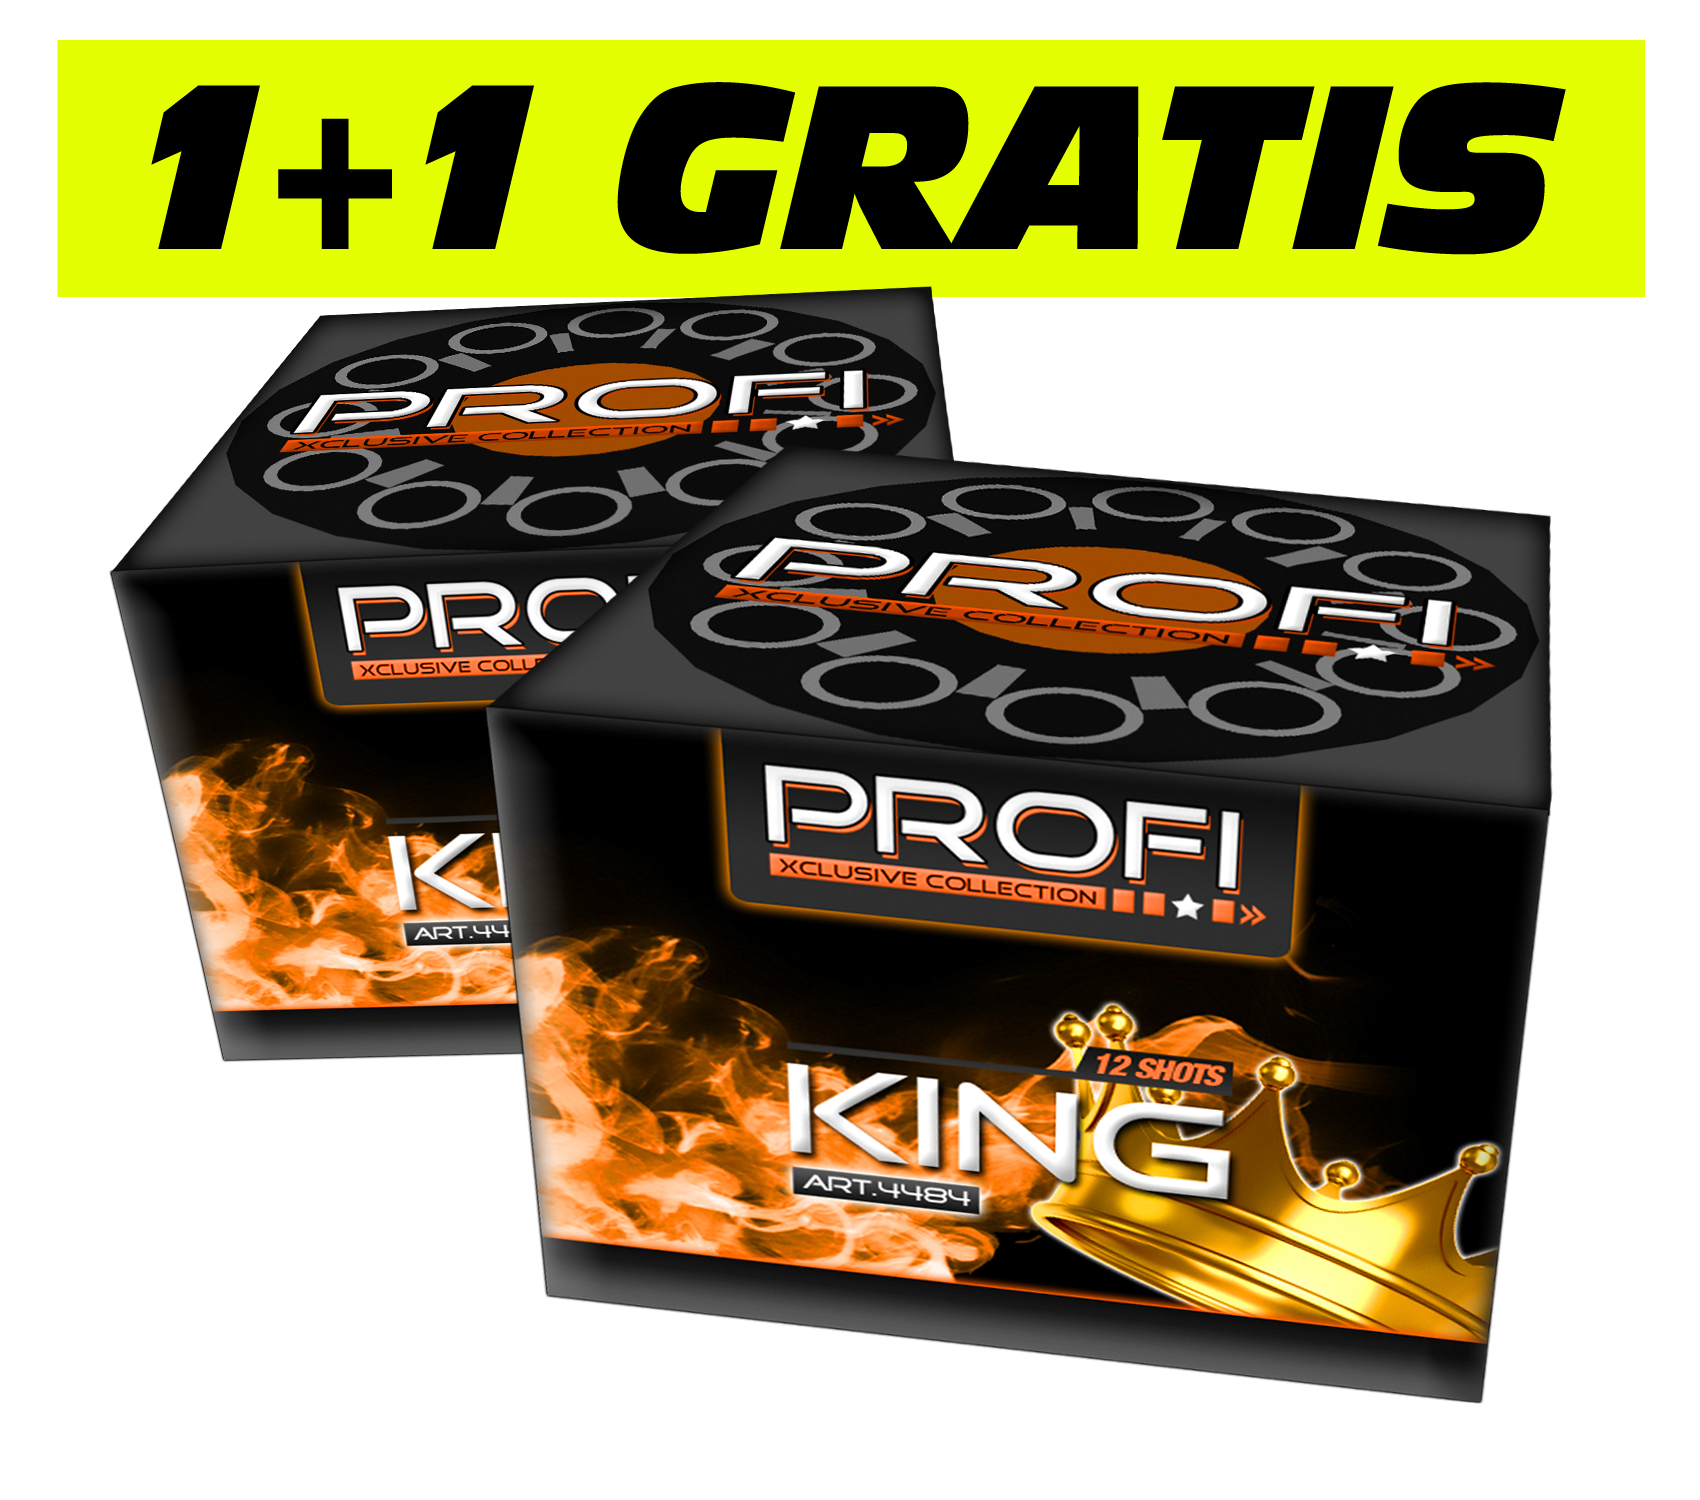 2x King (1+1 GRATIS)